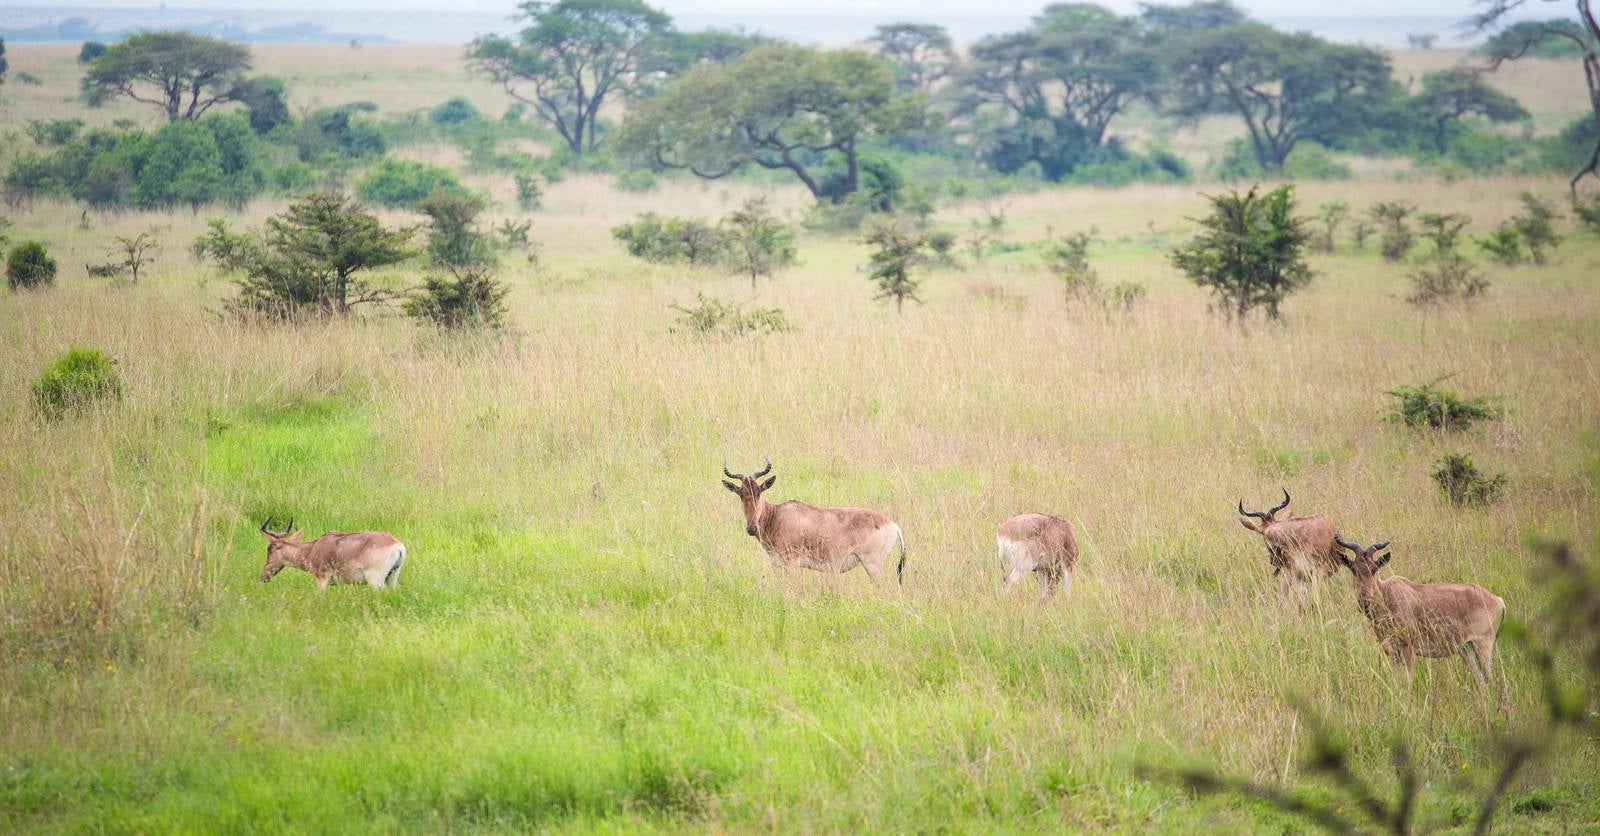 「草原を生きる野生動物の群れ」の写真